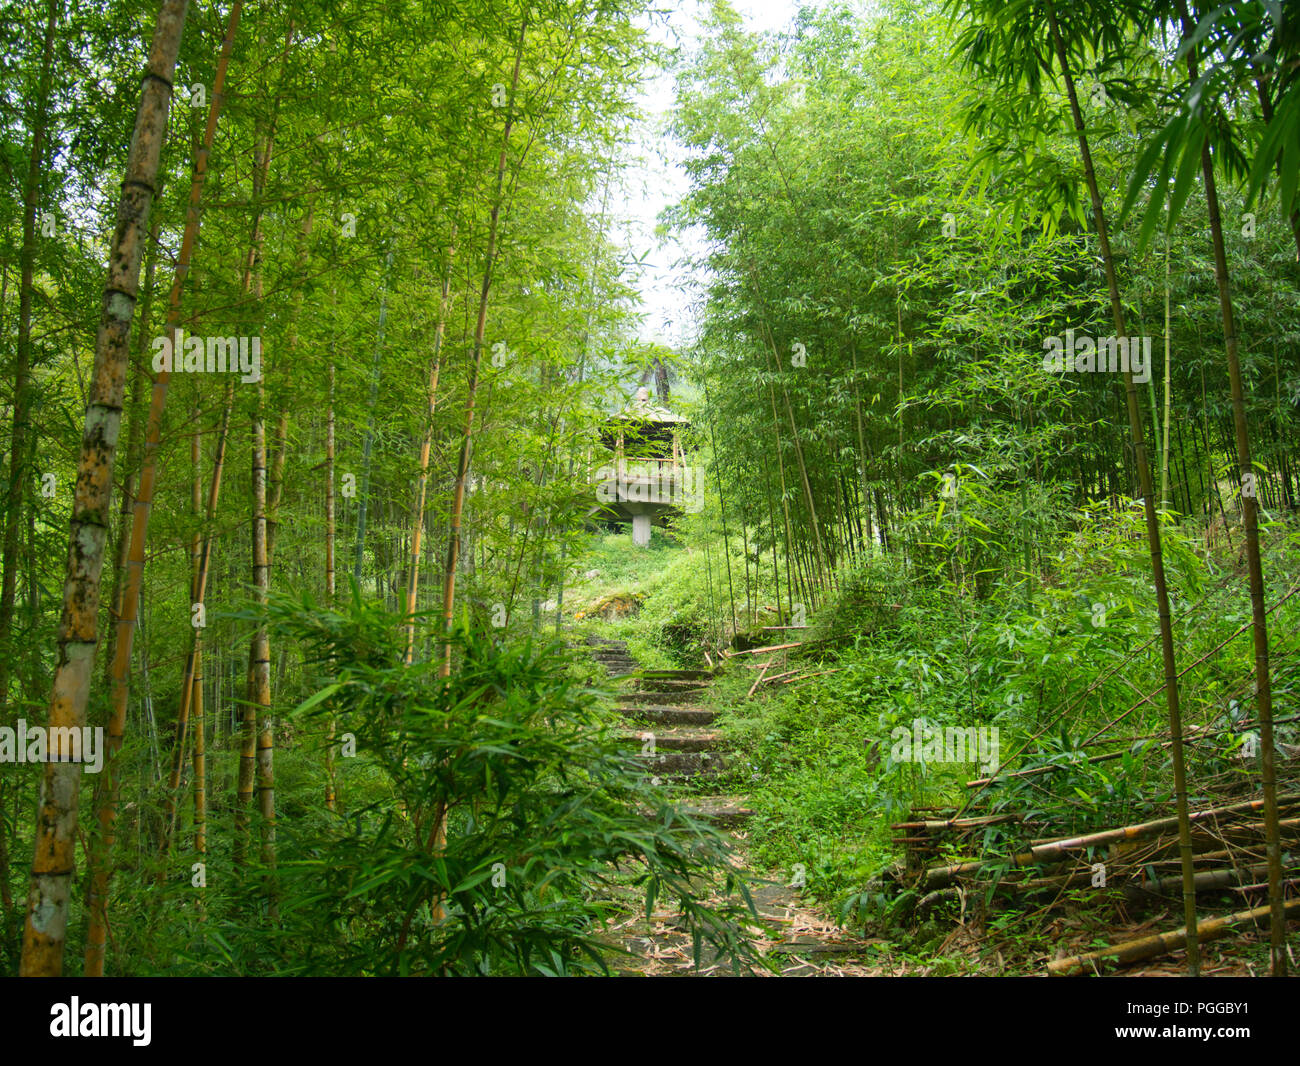 Escaliers dans une forêt de bambou vert menant vers le haut d'une plate-forme d'observation dans la nature, de l'enseignement Xitou Taichung, Taiwan Banque D'Images